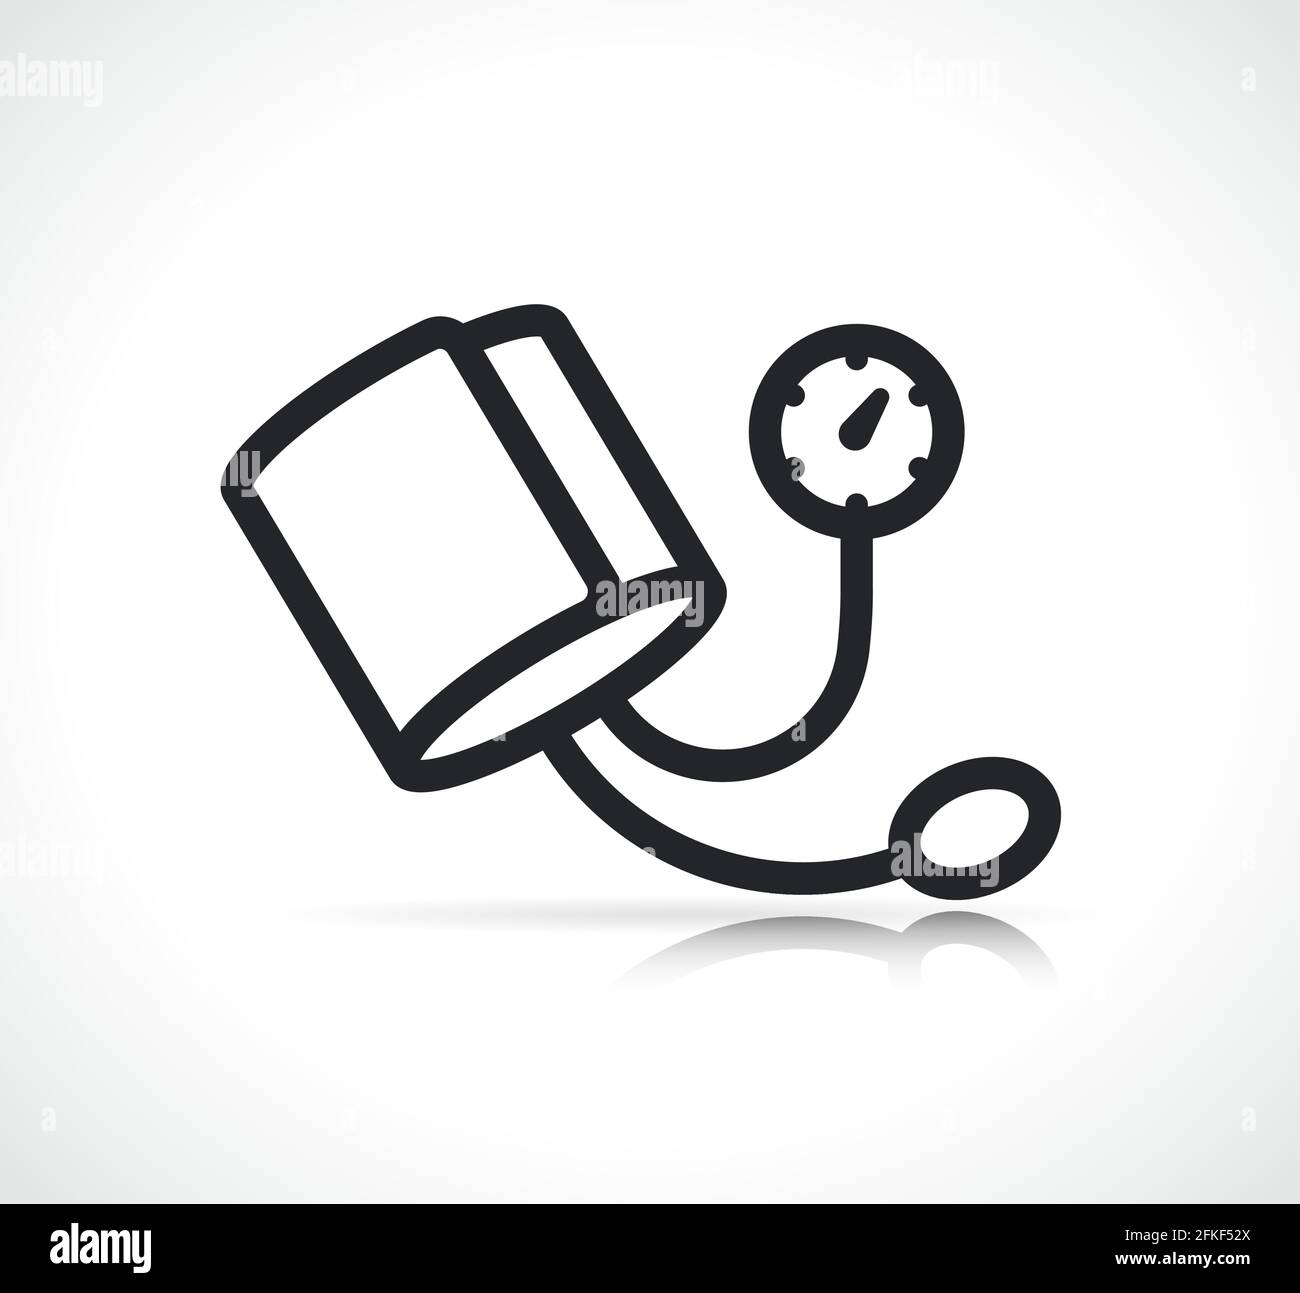 Illustrazione dell'icona dello sfigmomanometro o della pressione sanguigna isolata Illustrazione Vettoriale